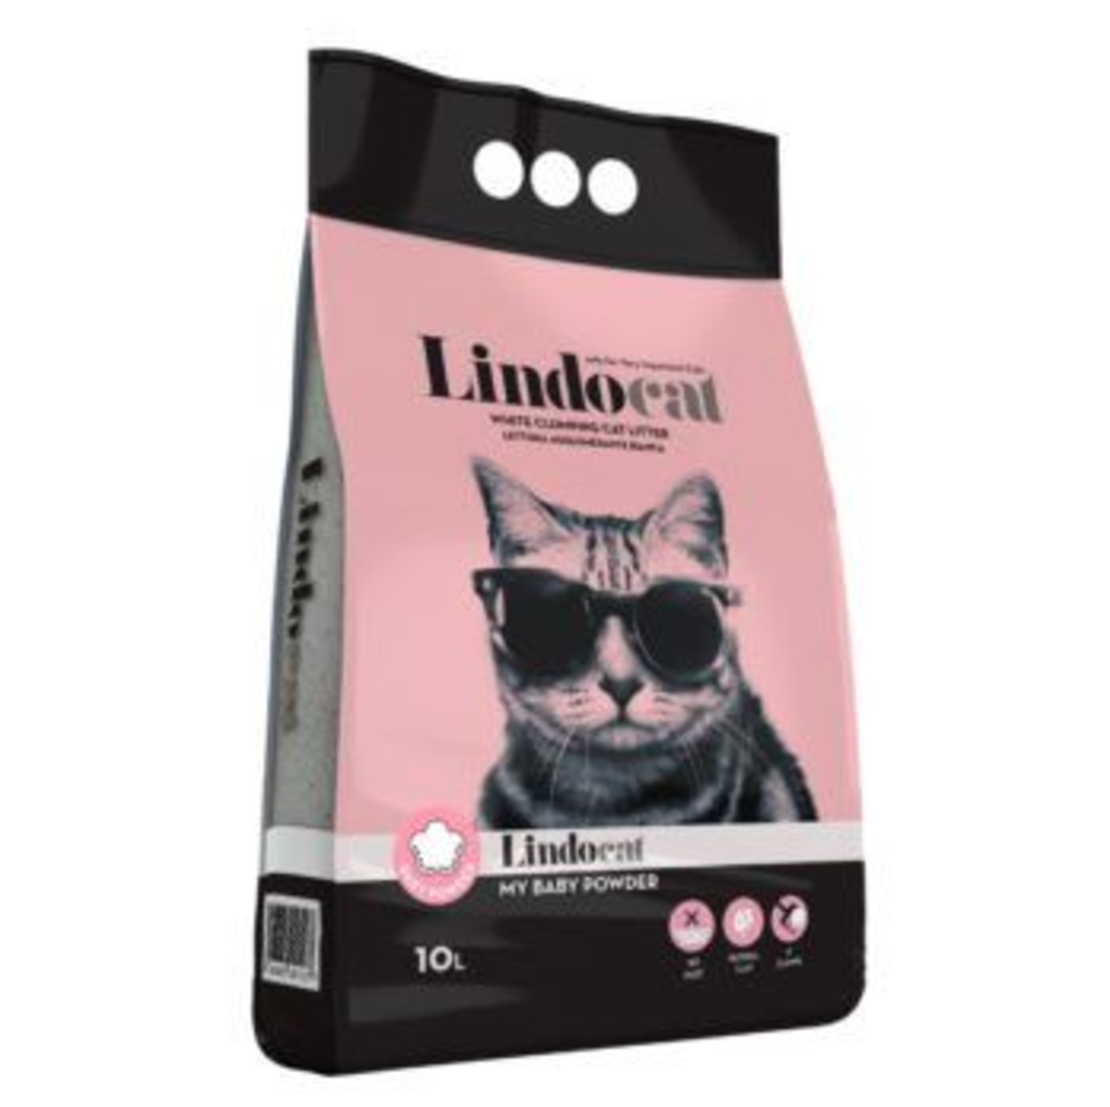 חול לינדו קט מתגבש וריחני לחתול10 ליטר -Lindocat